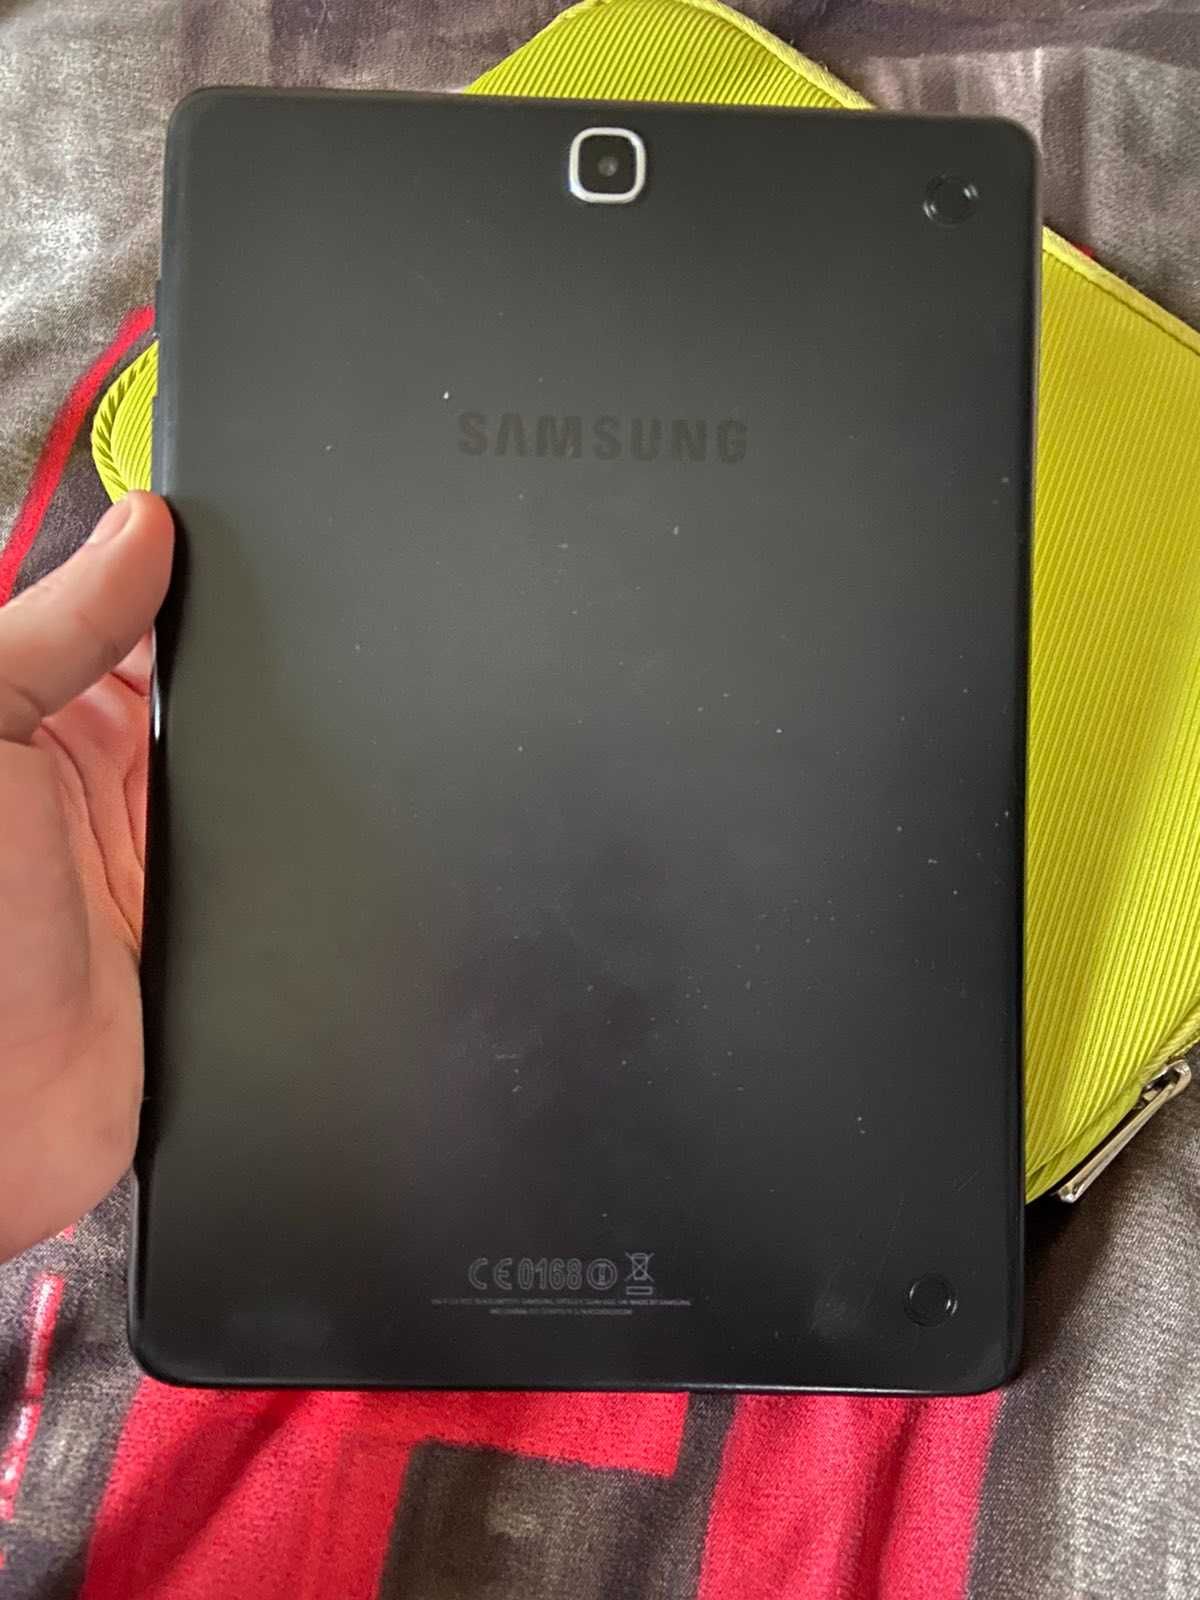 Samsung Galaxy Tab А SM-T555 9,7" 16Gb